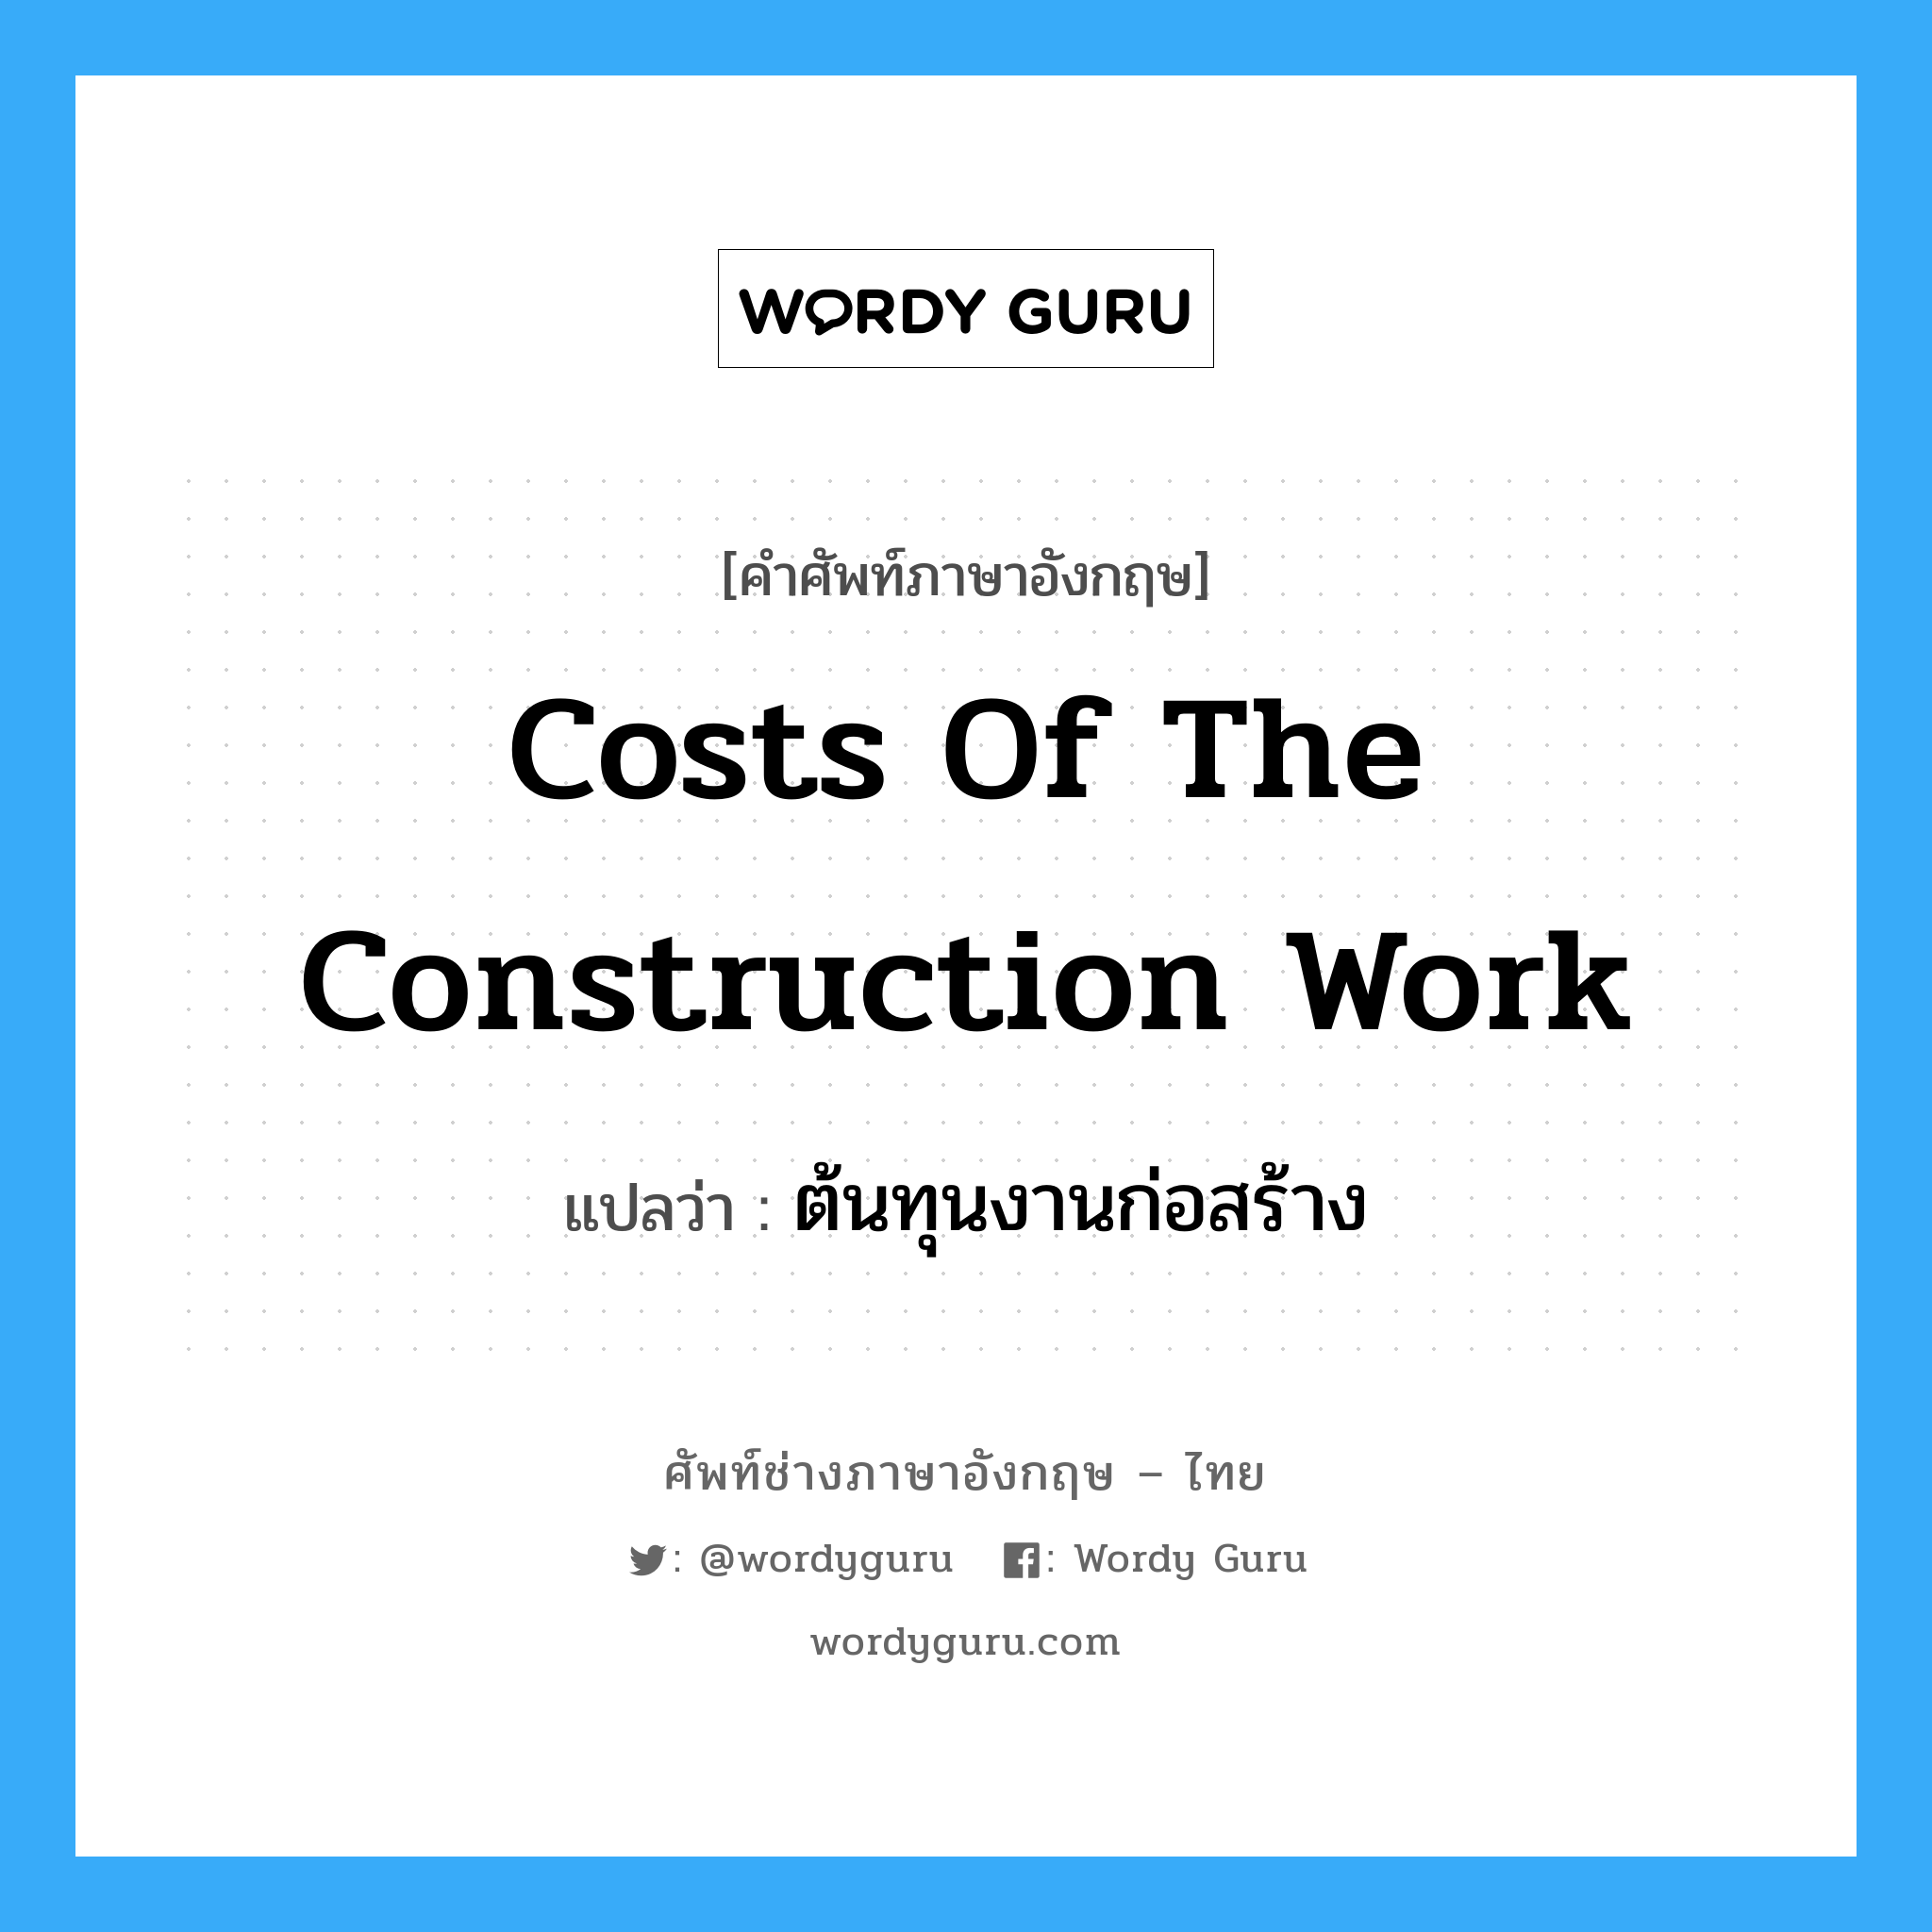 Costs of the Construction Work แปลว่า?, คำศัพท์ช่างภาษาอังกฤษ - ไทย Costs of the Construction Work คำศัพท์ภาษาอังกฤษ Costs of the Construction Work แปลว่า ต้นทุนงานก่อสร้าง